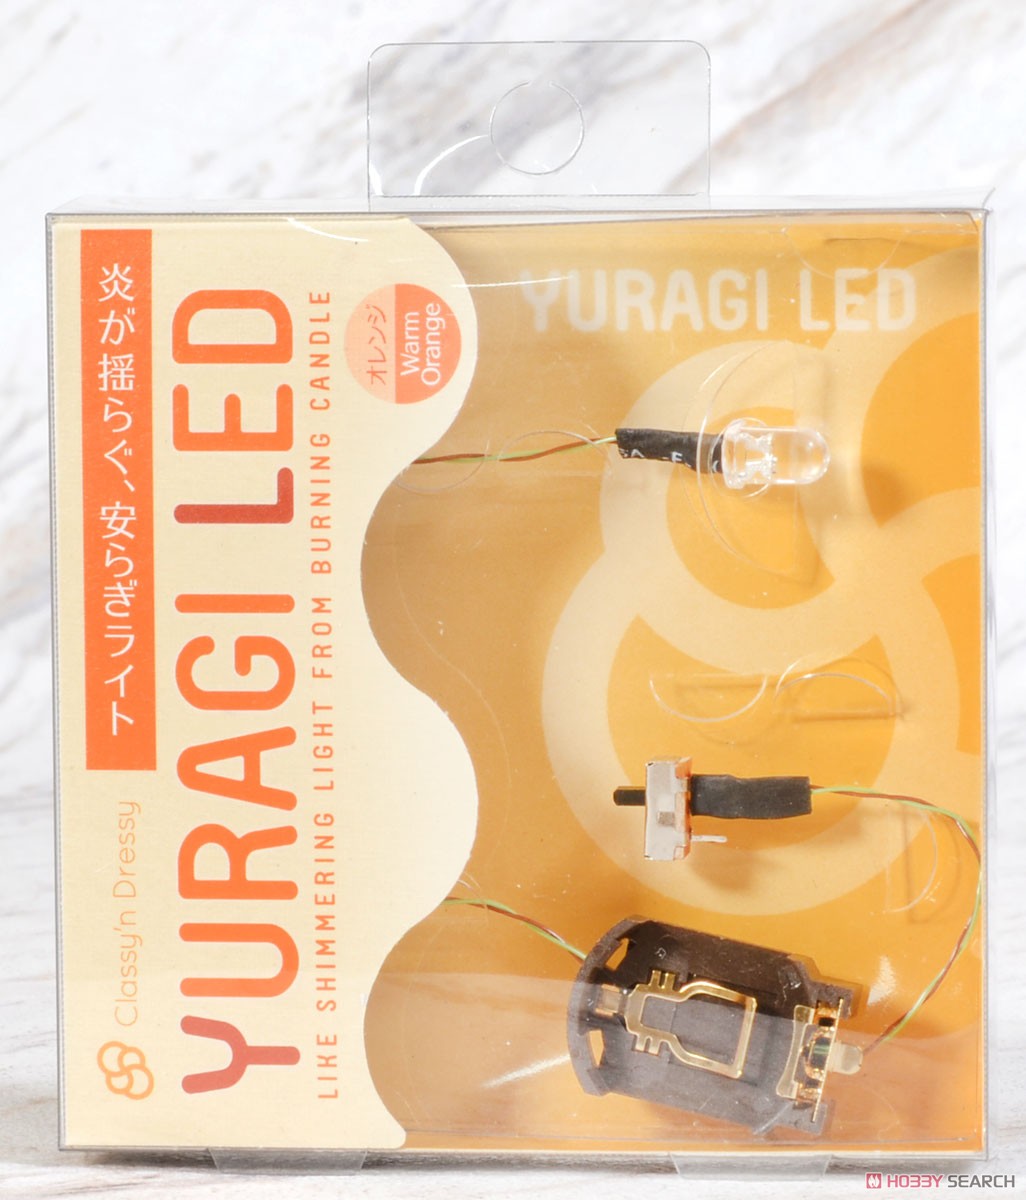 YURAGI LED (電飾) パッケージ1